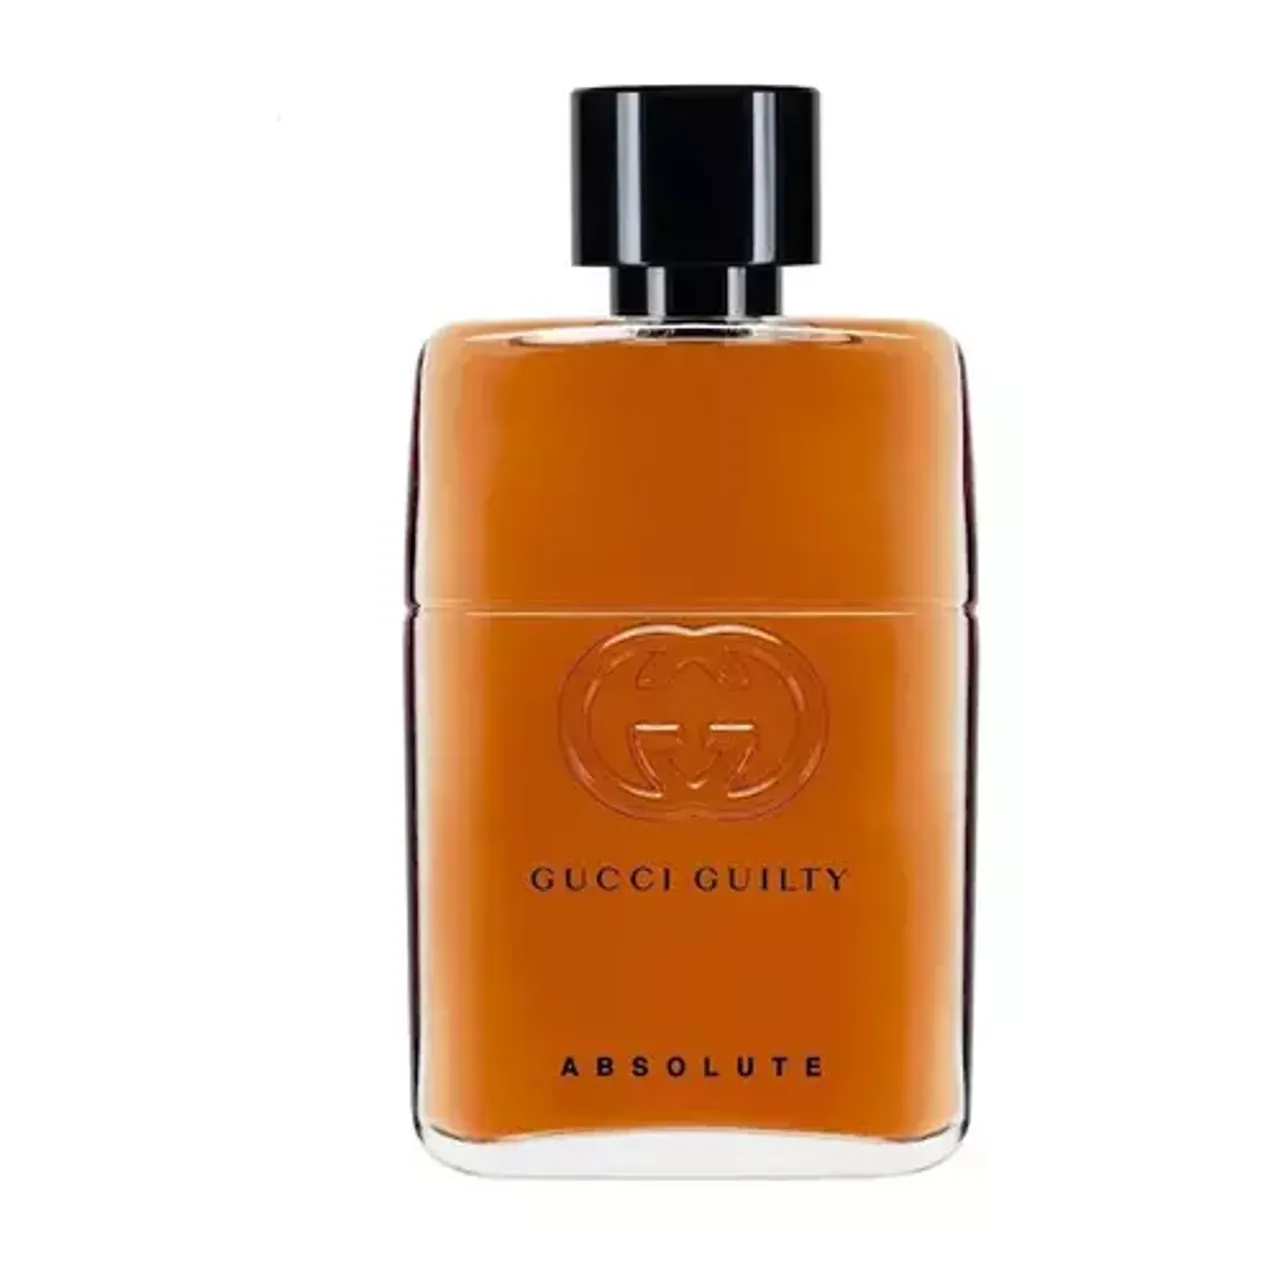 Gucci Guilty Absolute Eau de Parfum 50 ml